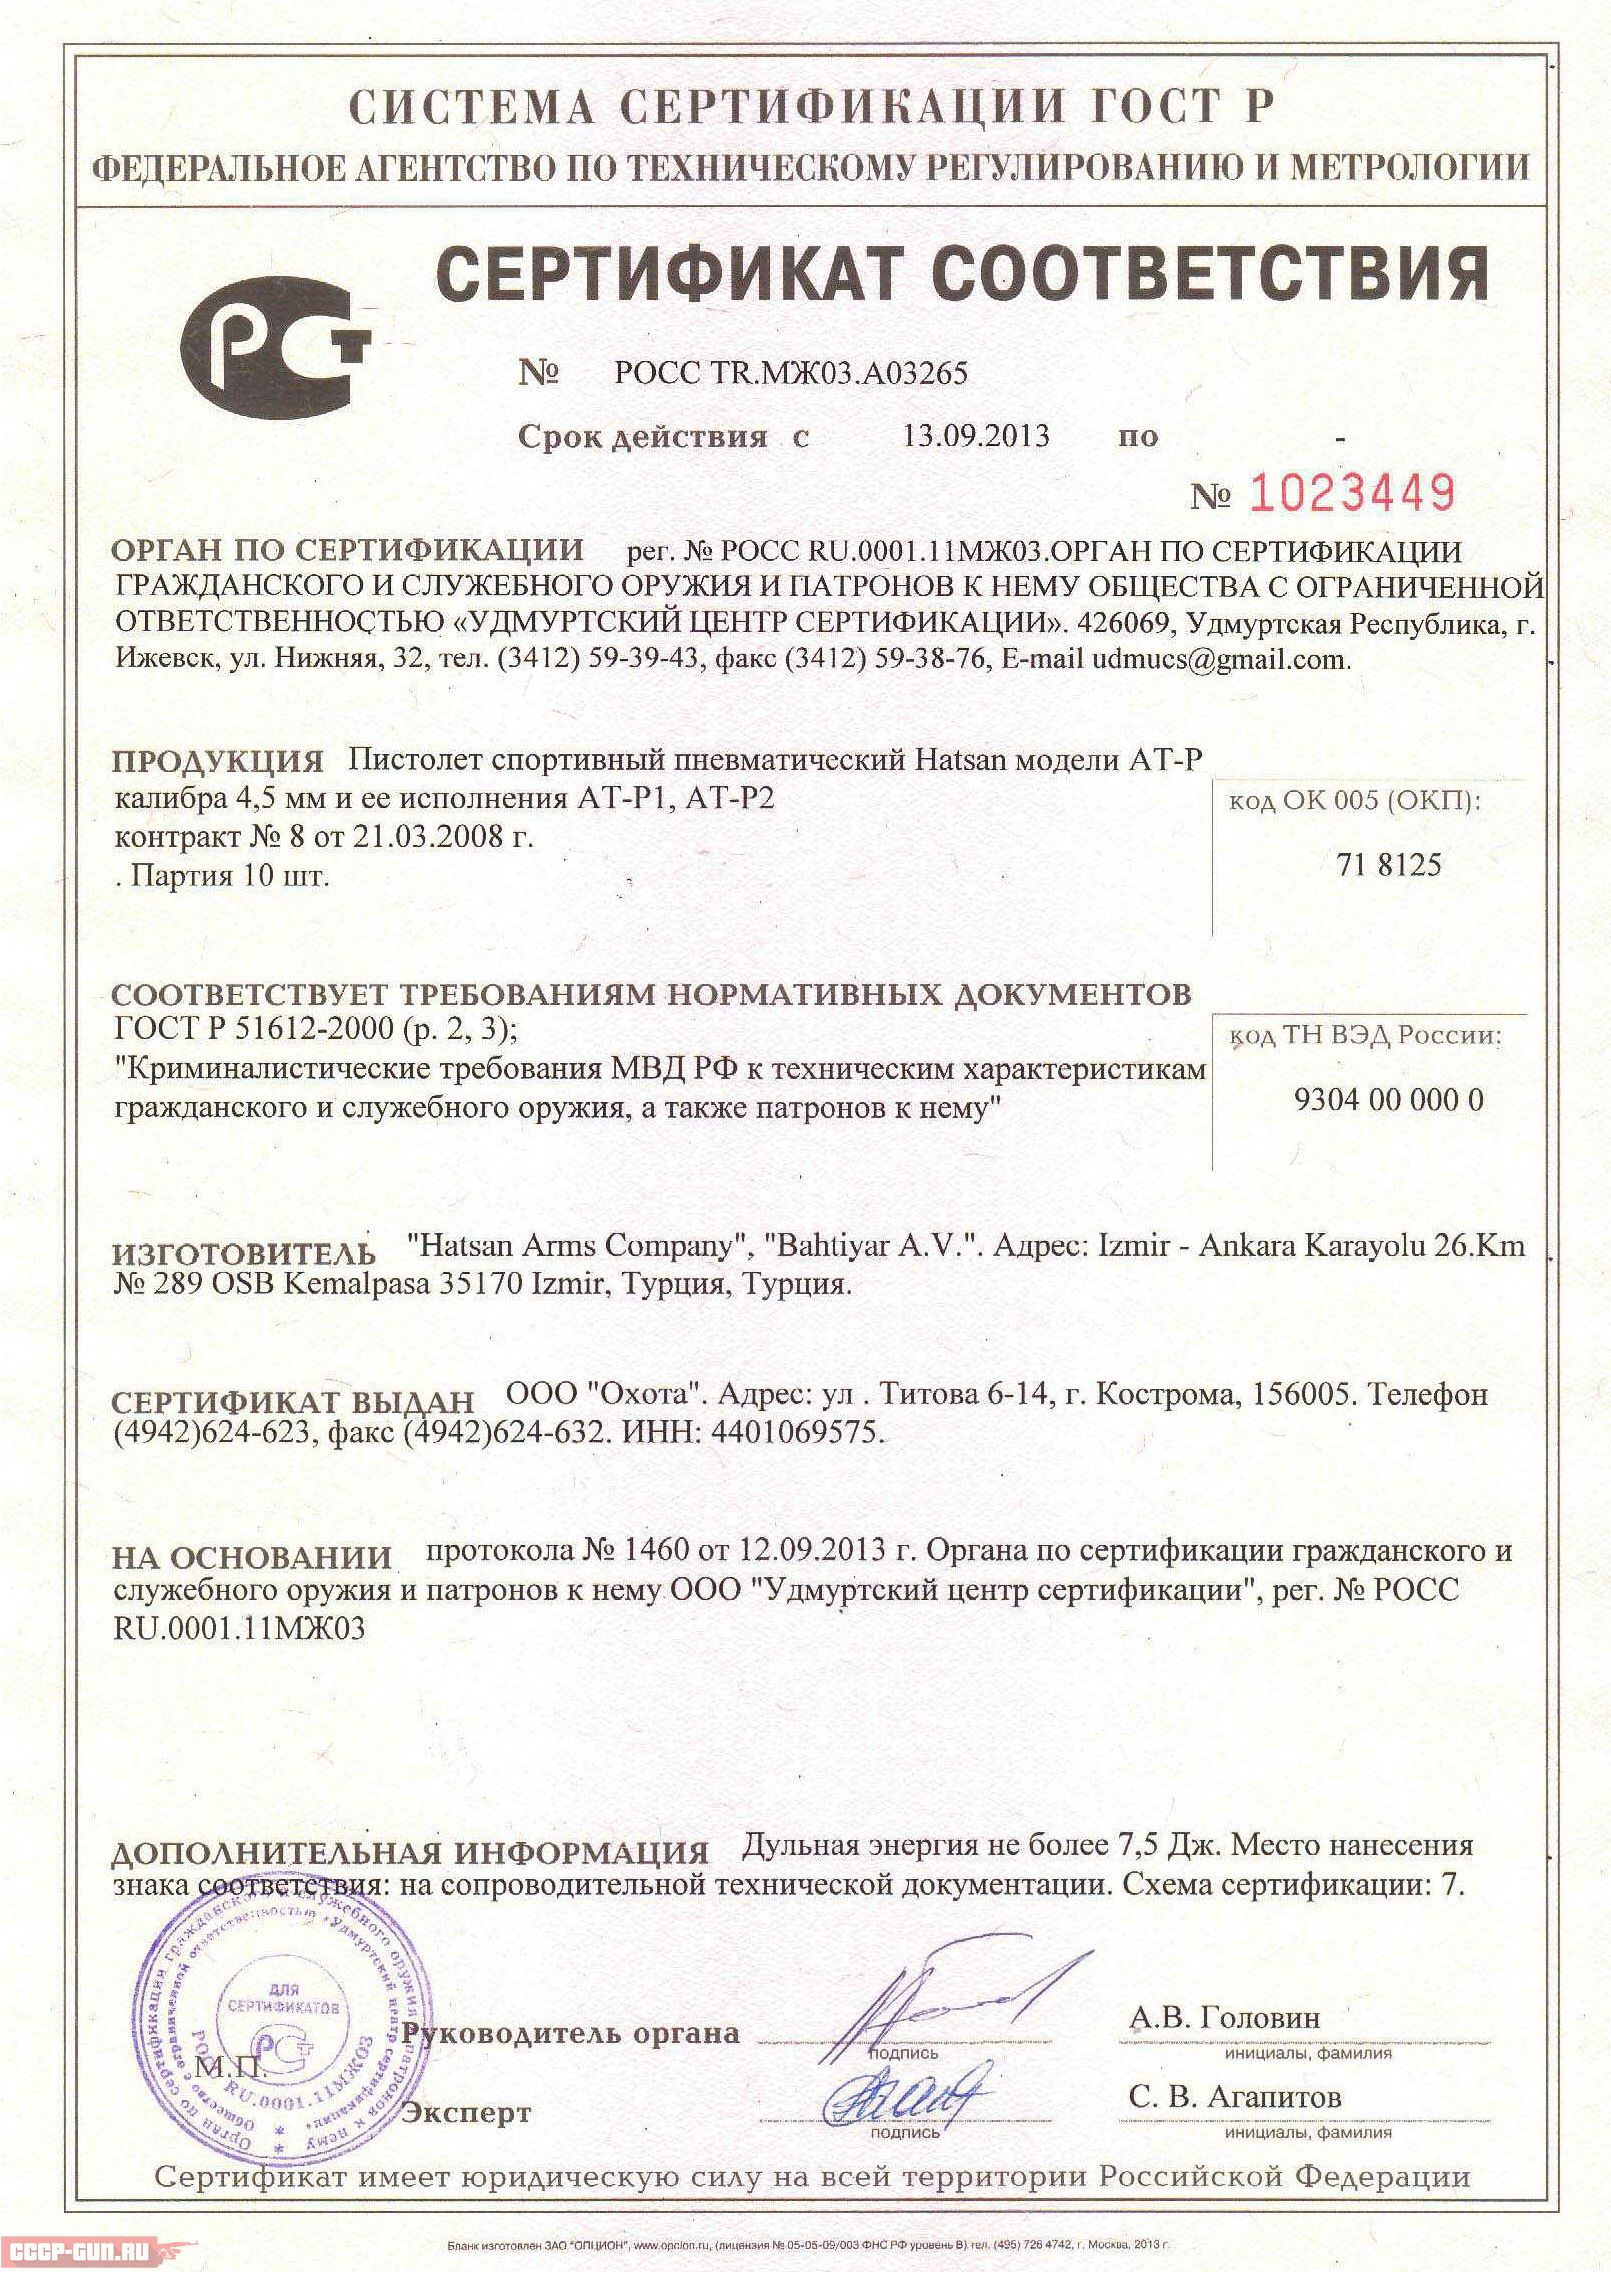 Сертификат на пневматический пистолет Hatsan AT-P2 скачать